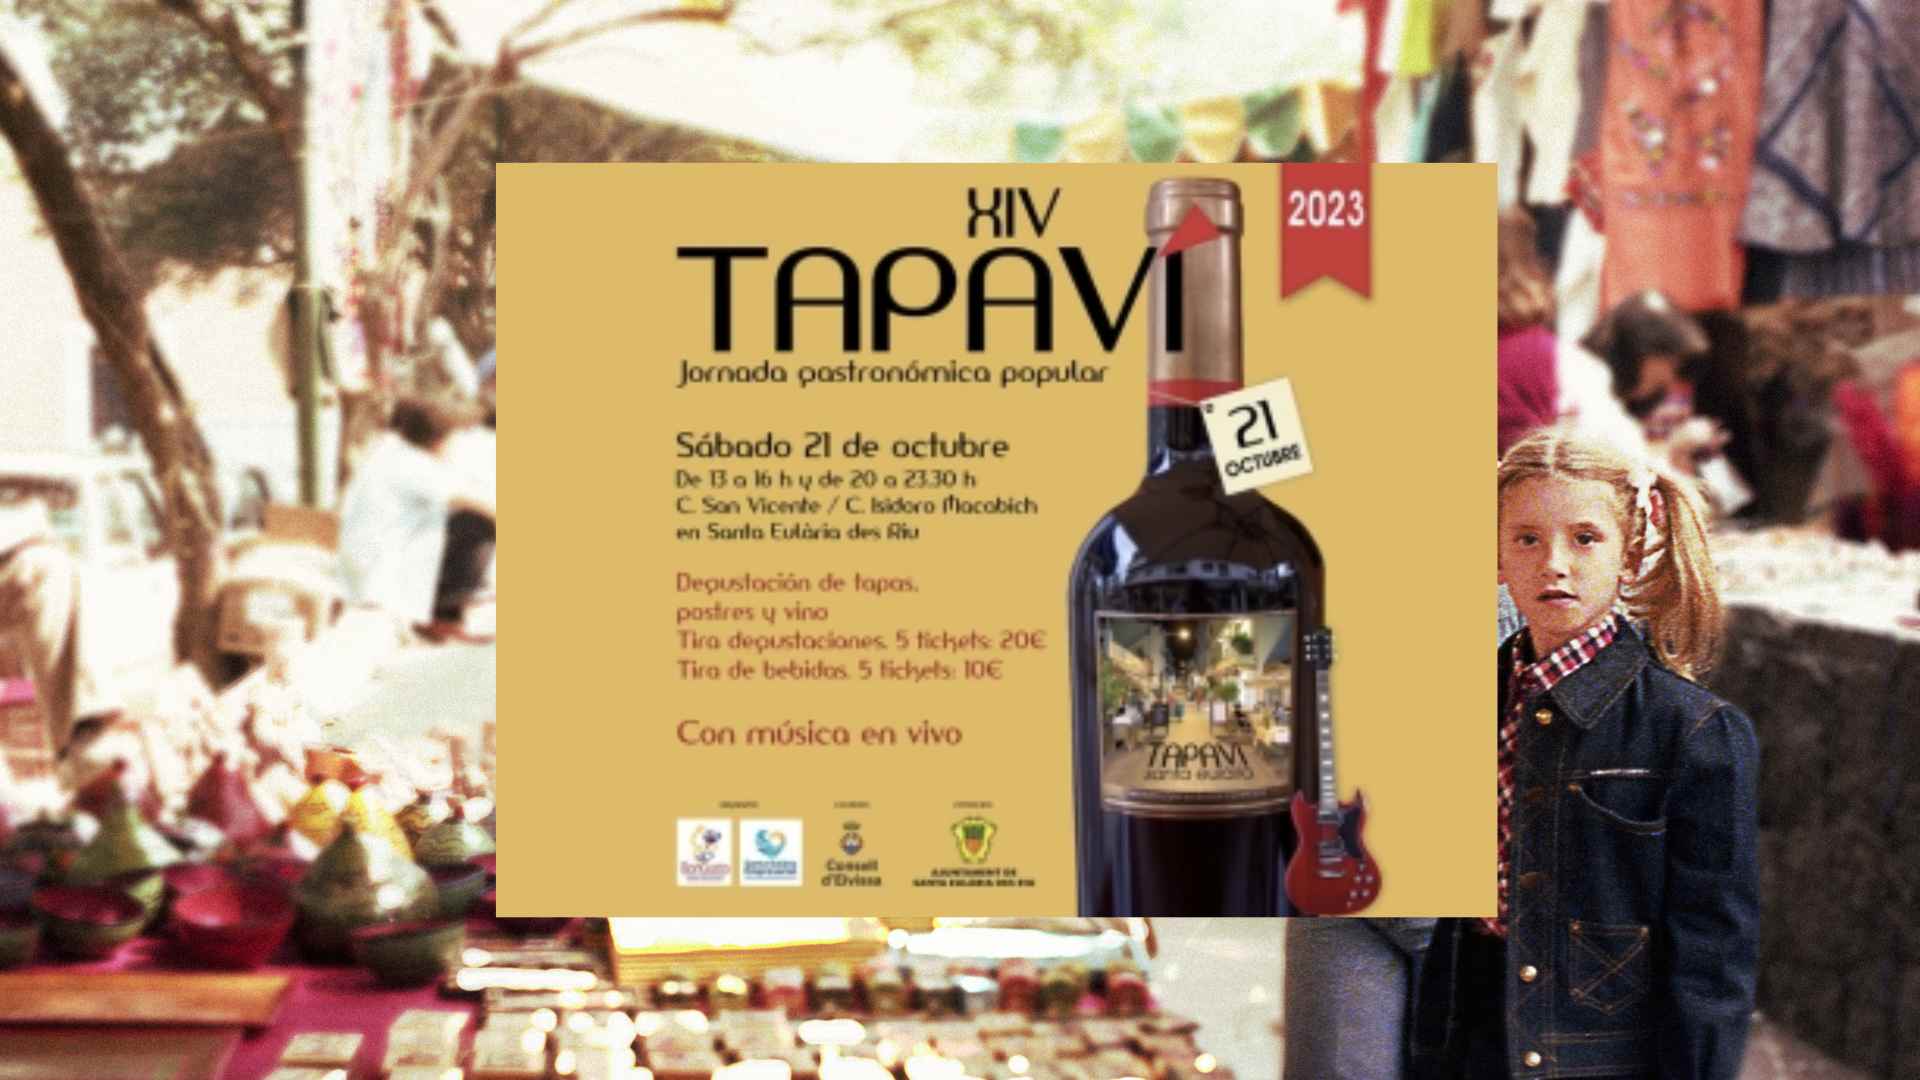 Feria gastronómica Tapa Vi en Santa Eulària des Riu. Ibiza